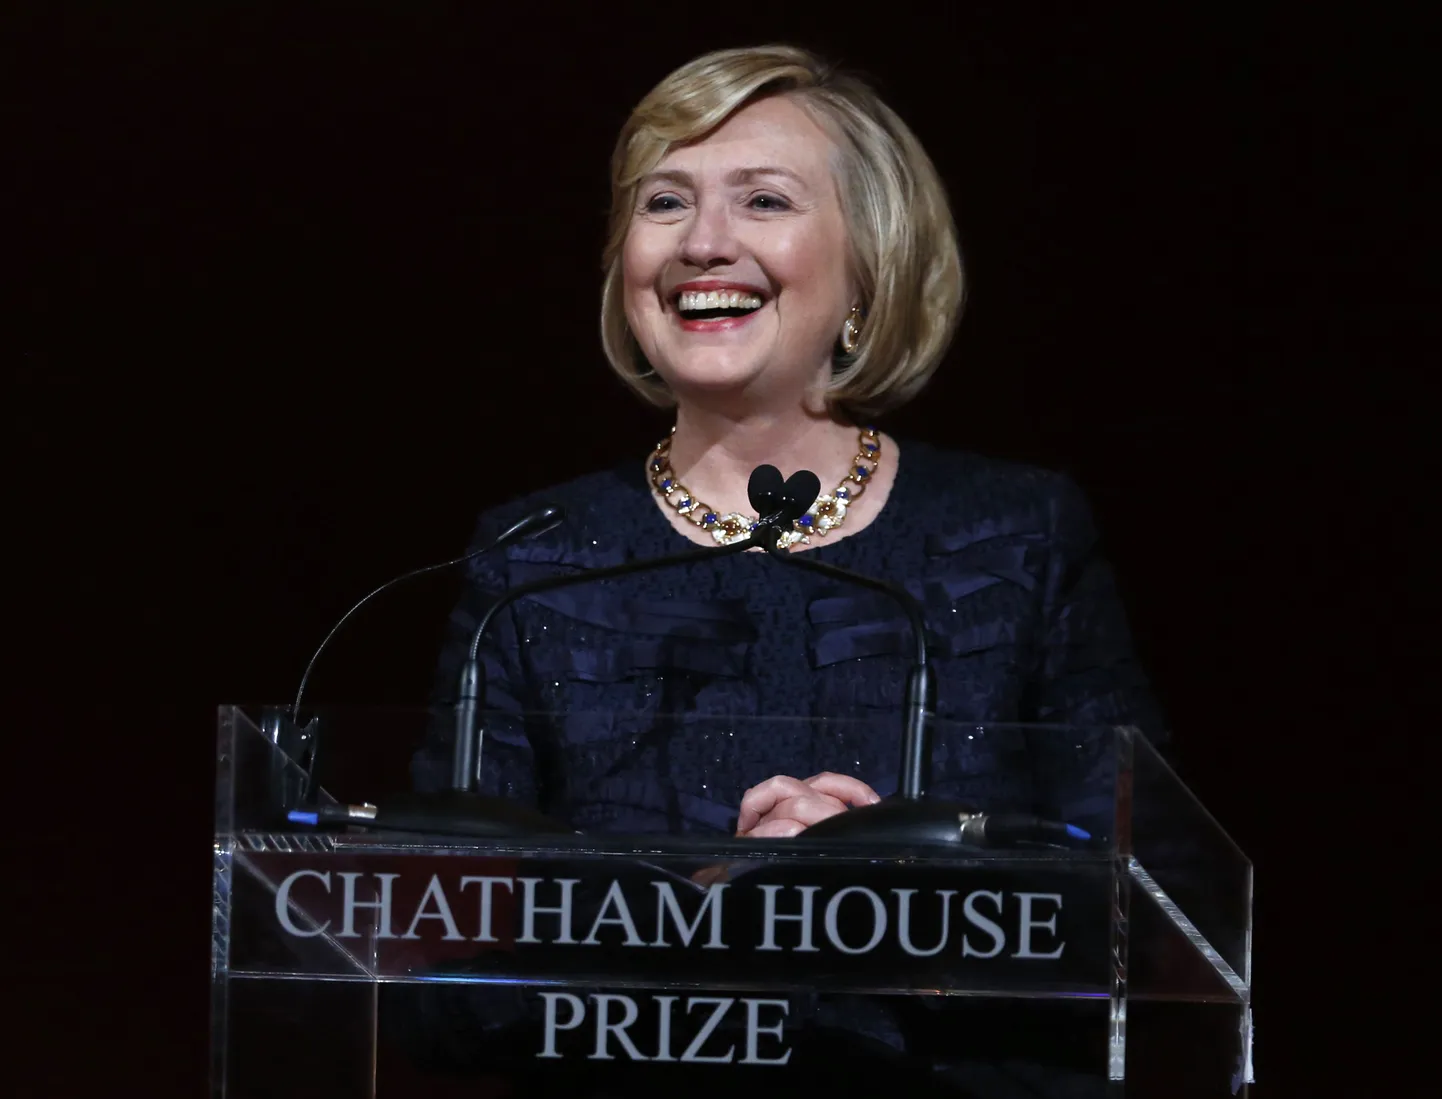 USA endine välisminister Hillary Clinton pidas 11. oktoobril Chatham House'is pärast preemia saamist kõne.